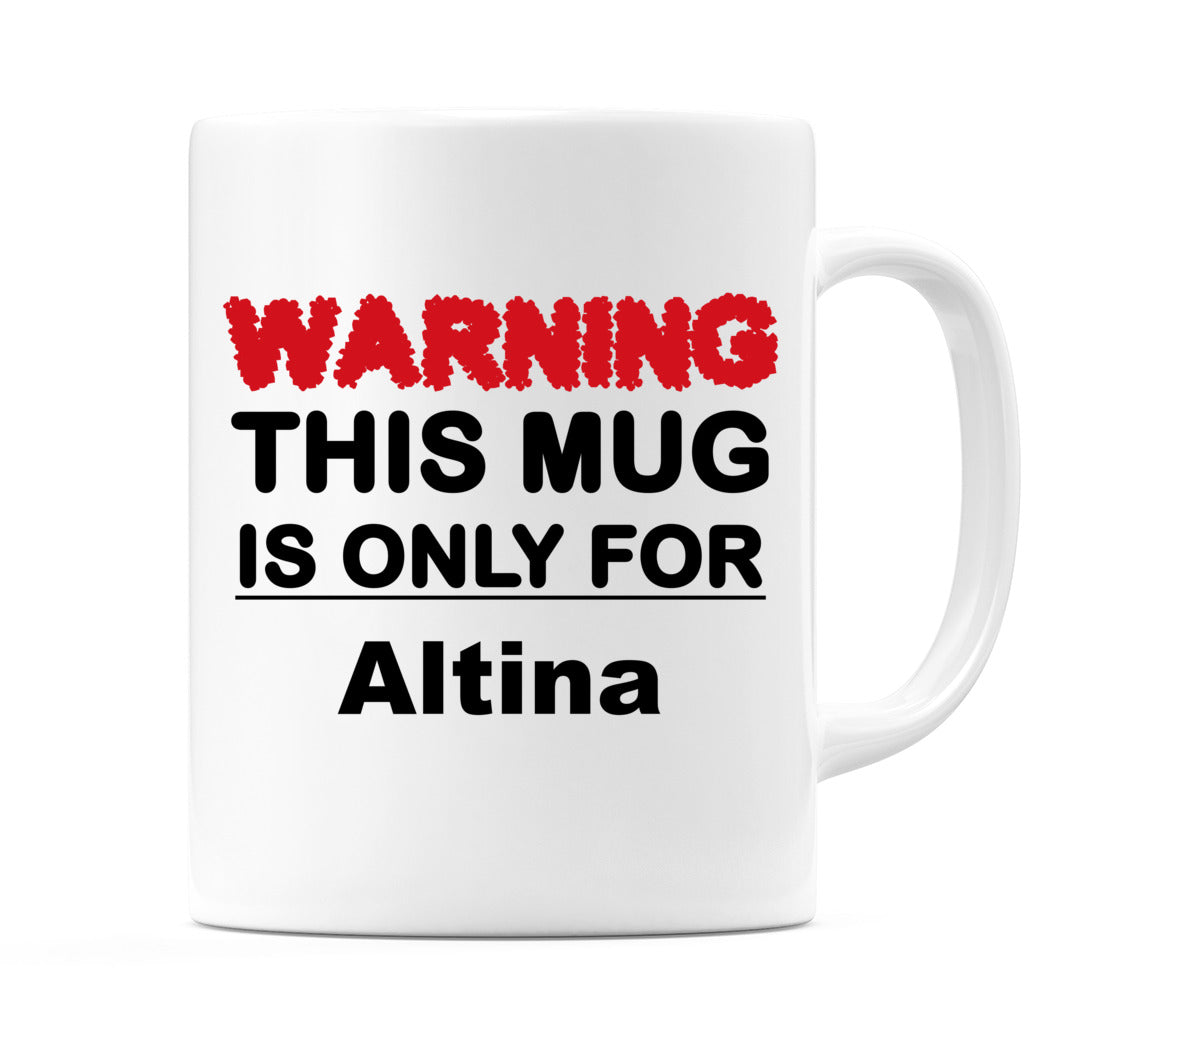 Warning This Mug is ONLY for Altina Mug